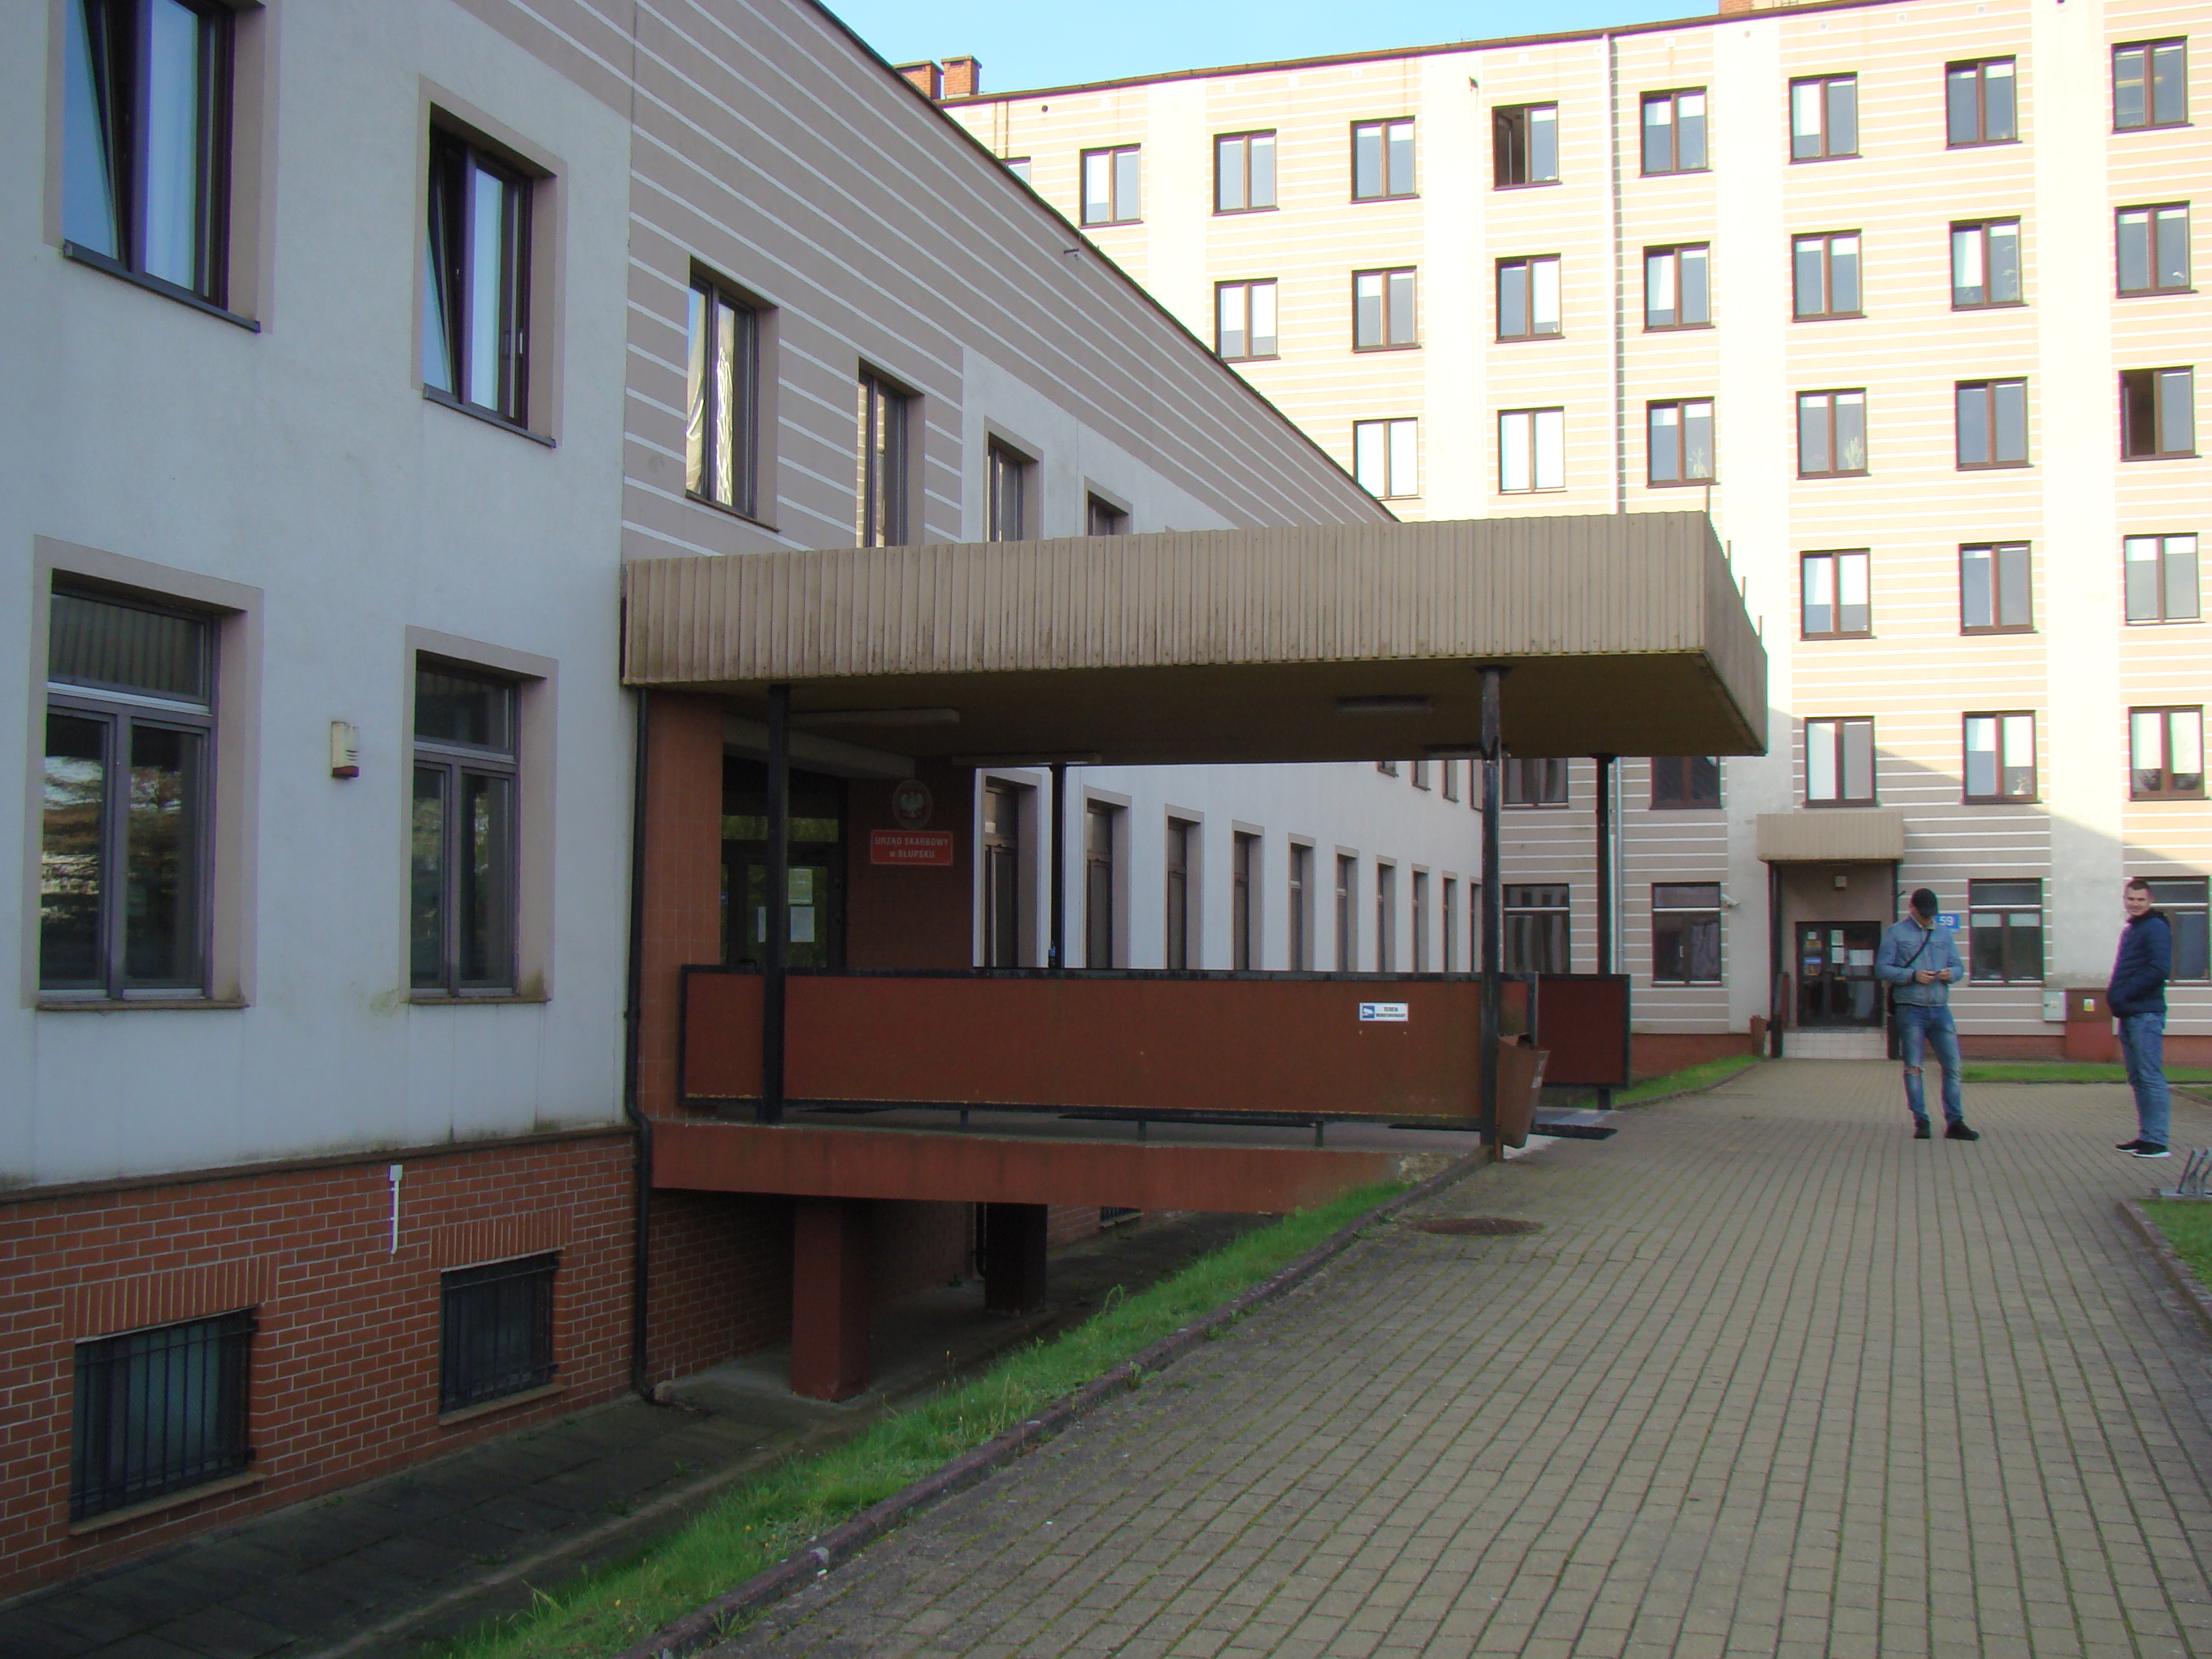 Wejście do budynku, w którym znajduje się siedziba Urzędu Skarbowego w Słupsku